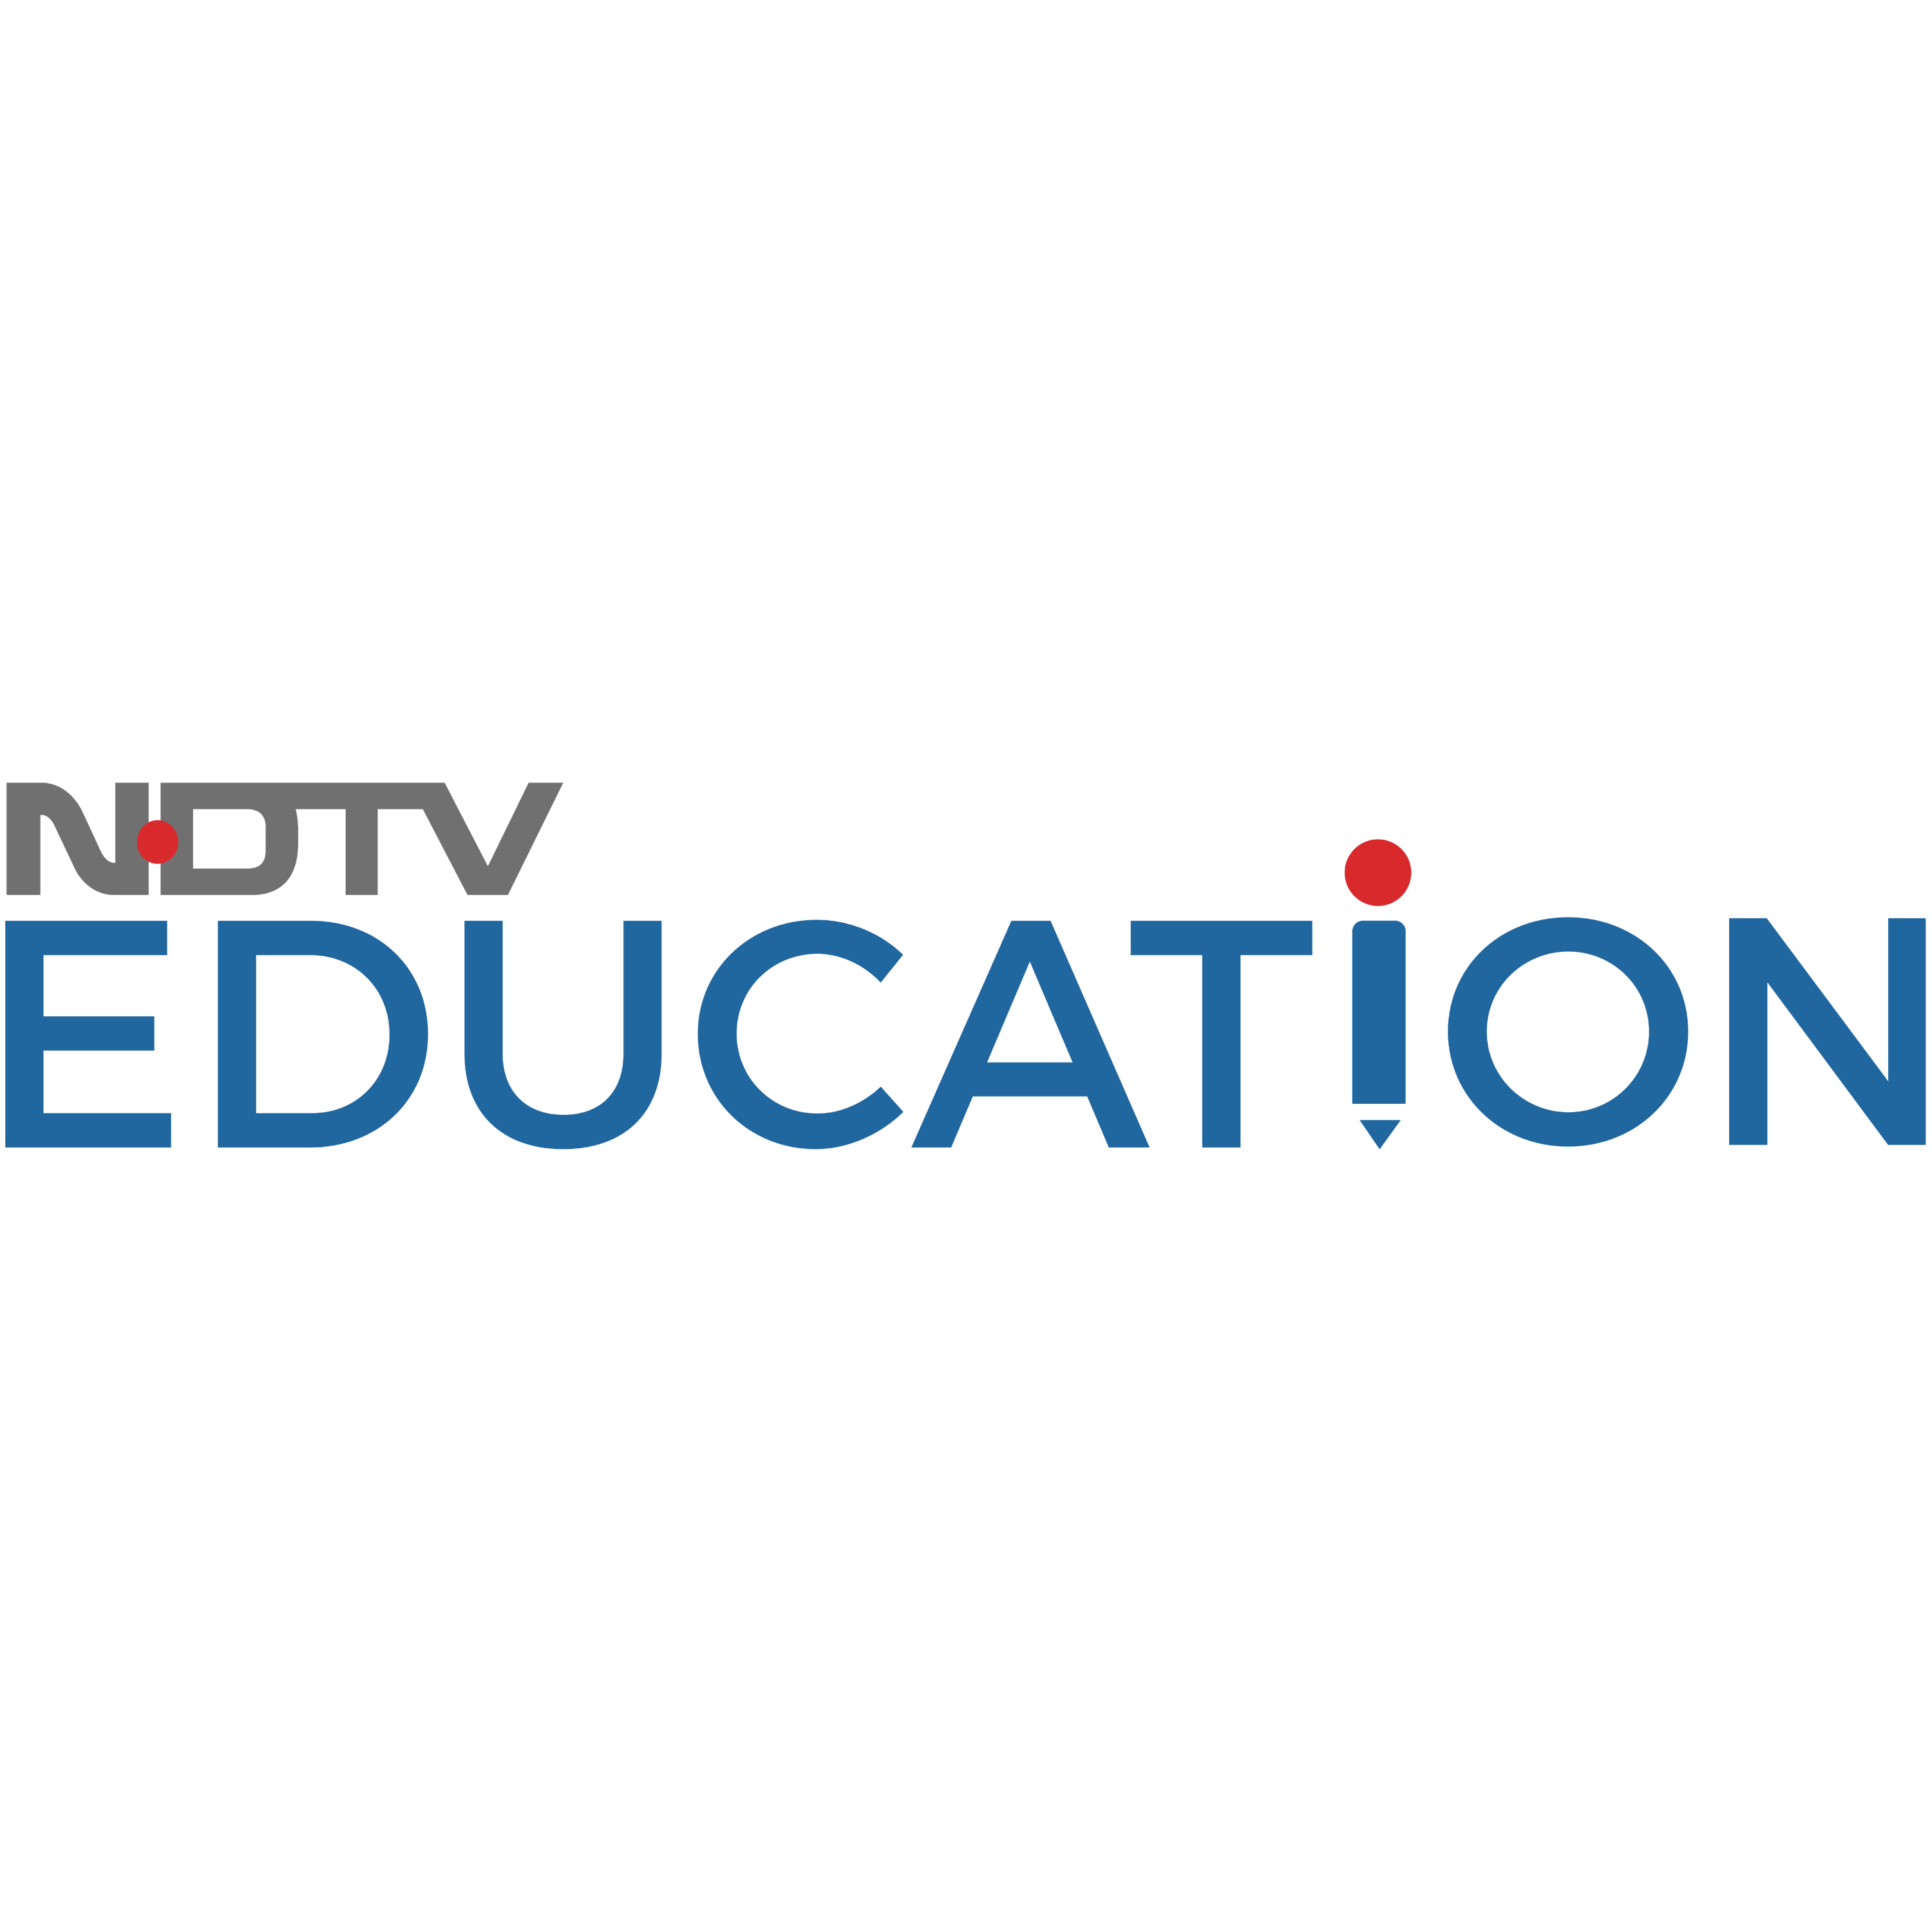 NDTV Education Logo Transparent Photo